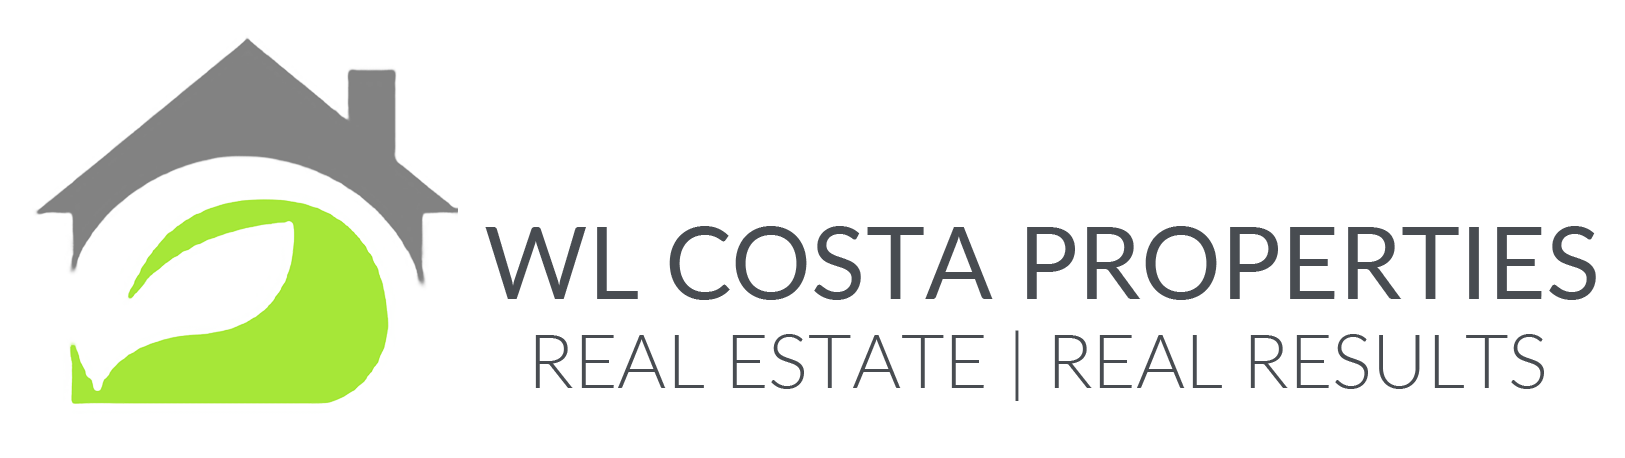 W L Costa Properties